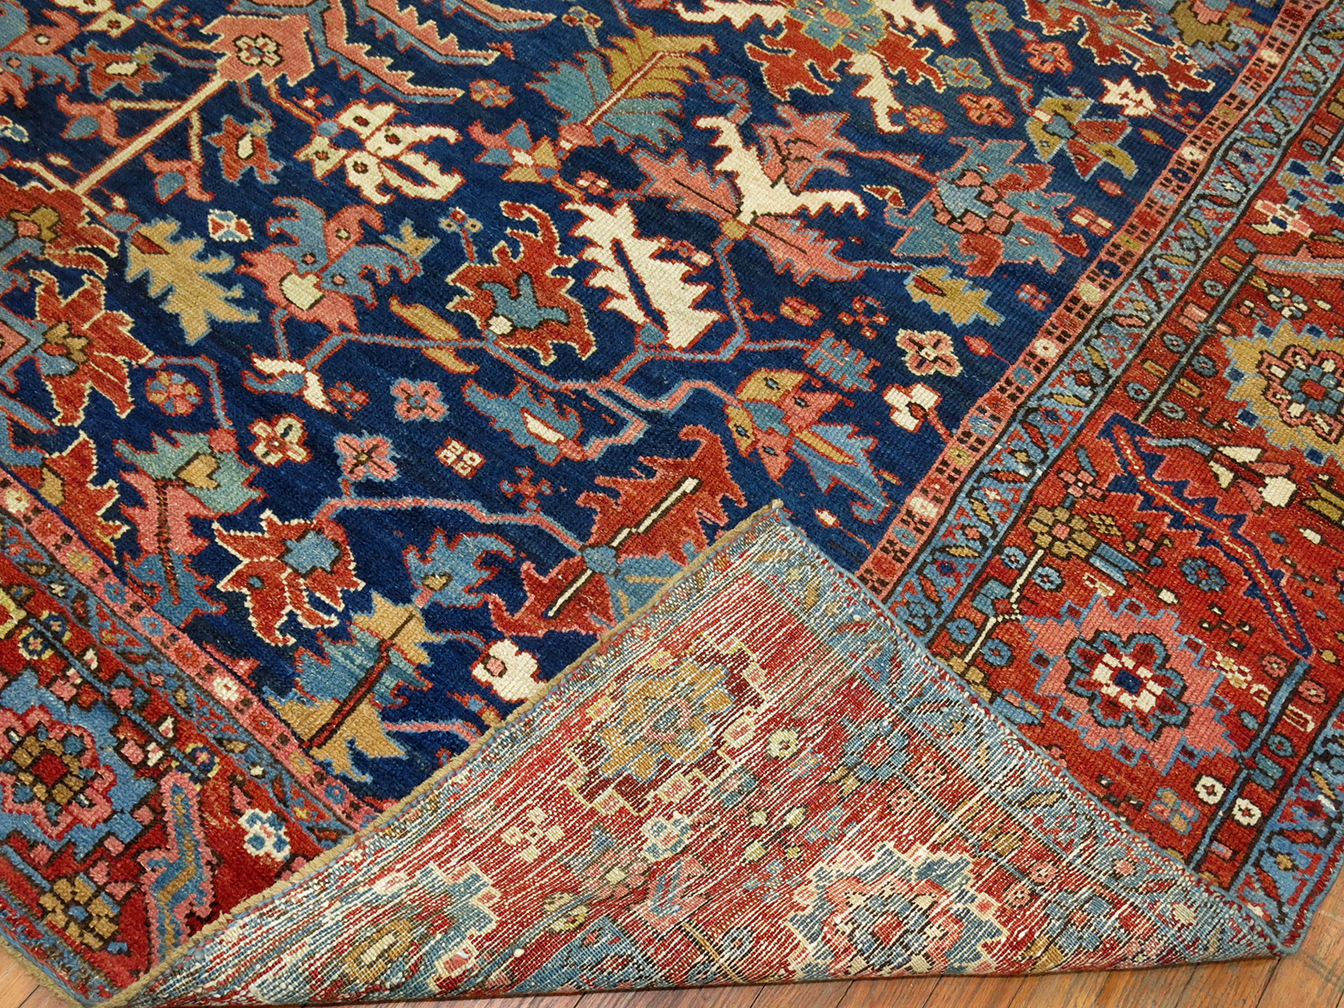 Antique heriz Carpet - # 55617